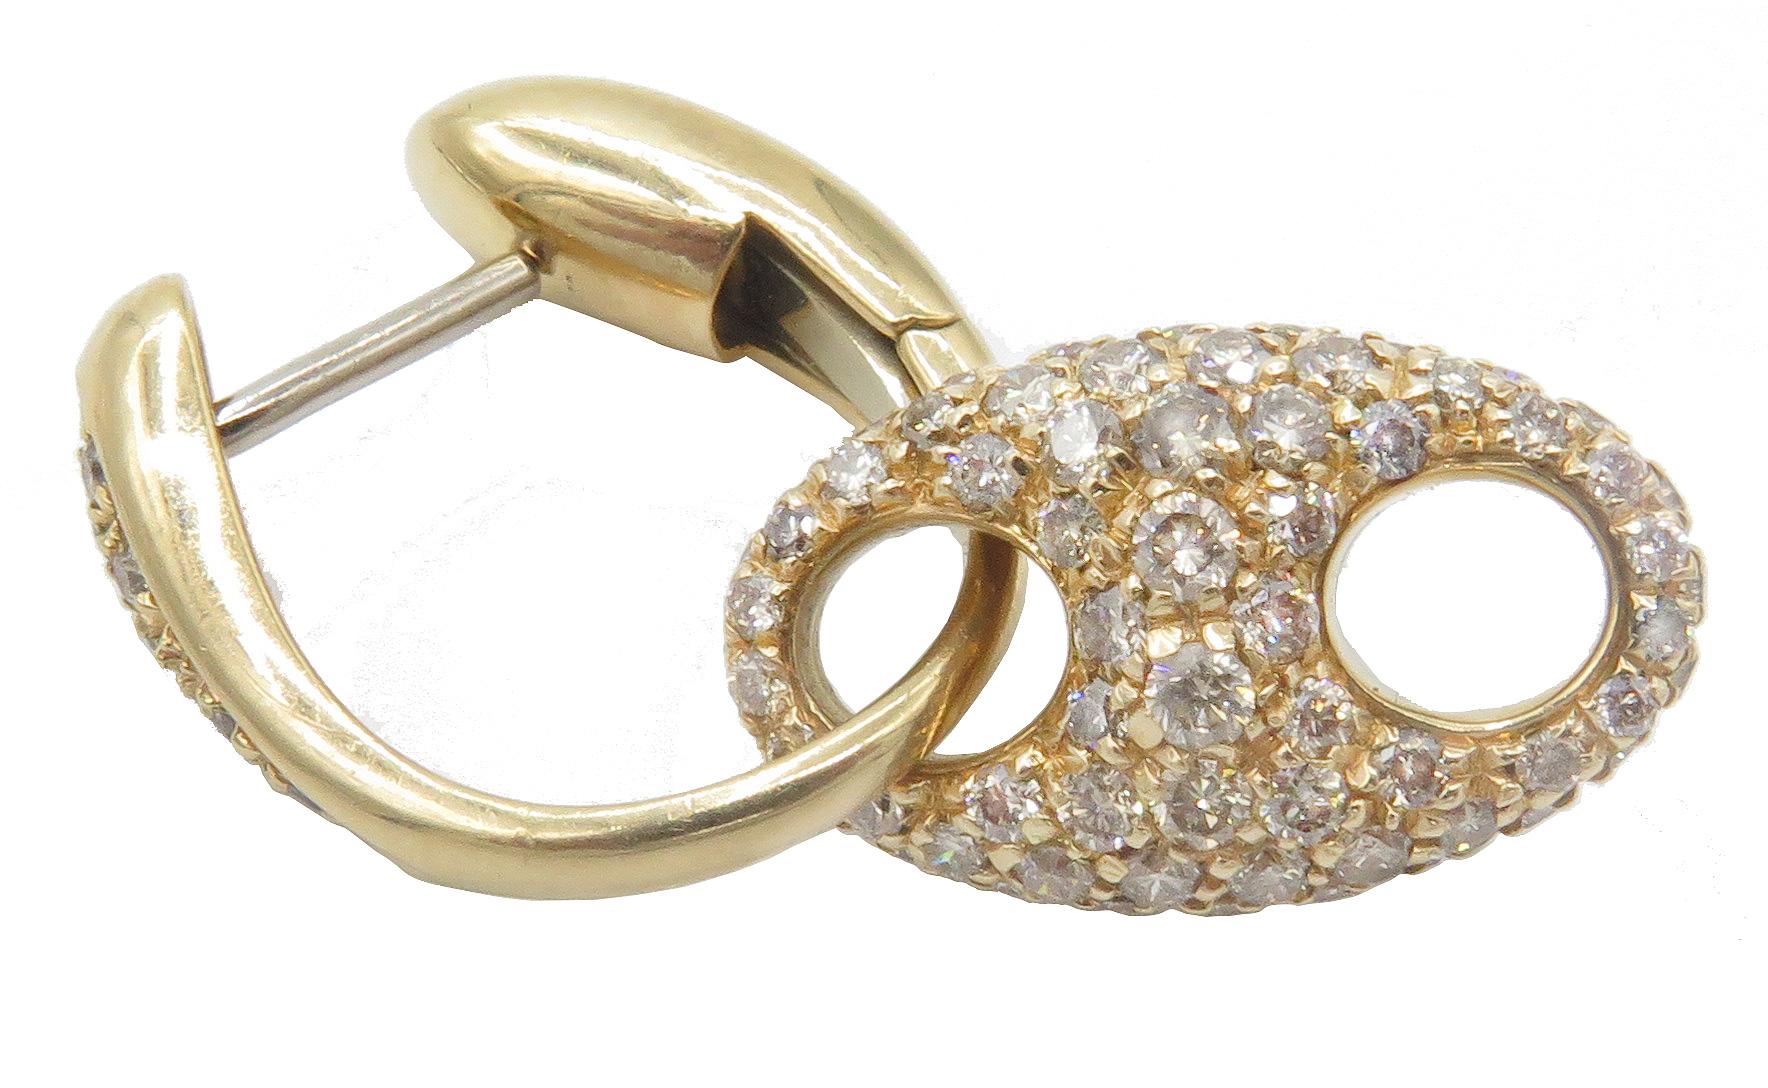 Magnifiques boucles d'oreilles en diamants pavés de la Collection Marina de Valente en or rose 18 carats. Ces boucles d'oreilles douces et de forme organique sont ornées de 1,57ctw de diamants pavés. Les boucles d'oreilles mesurent 1,25 pouce de